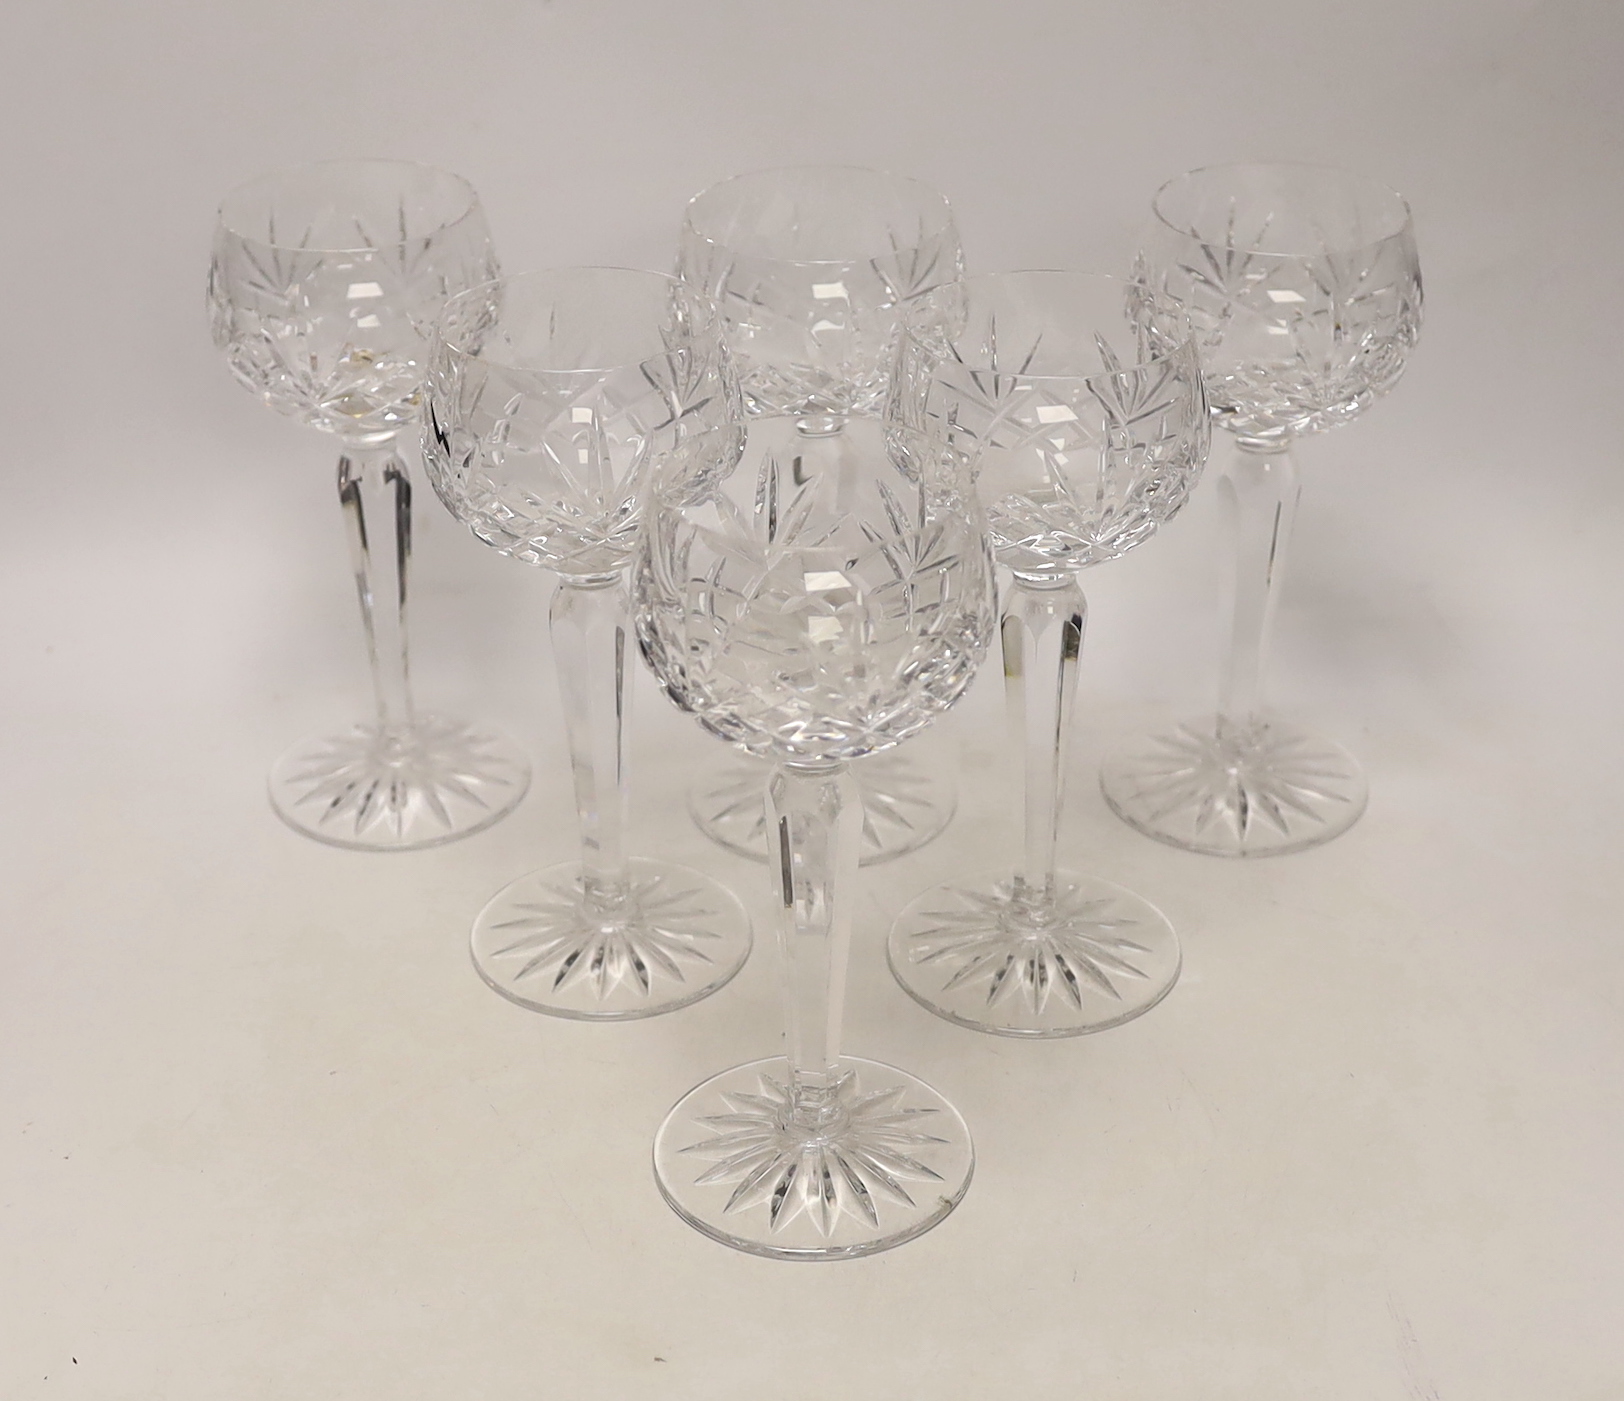 Six cut glass drinking glasses, 18cm high